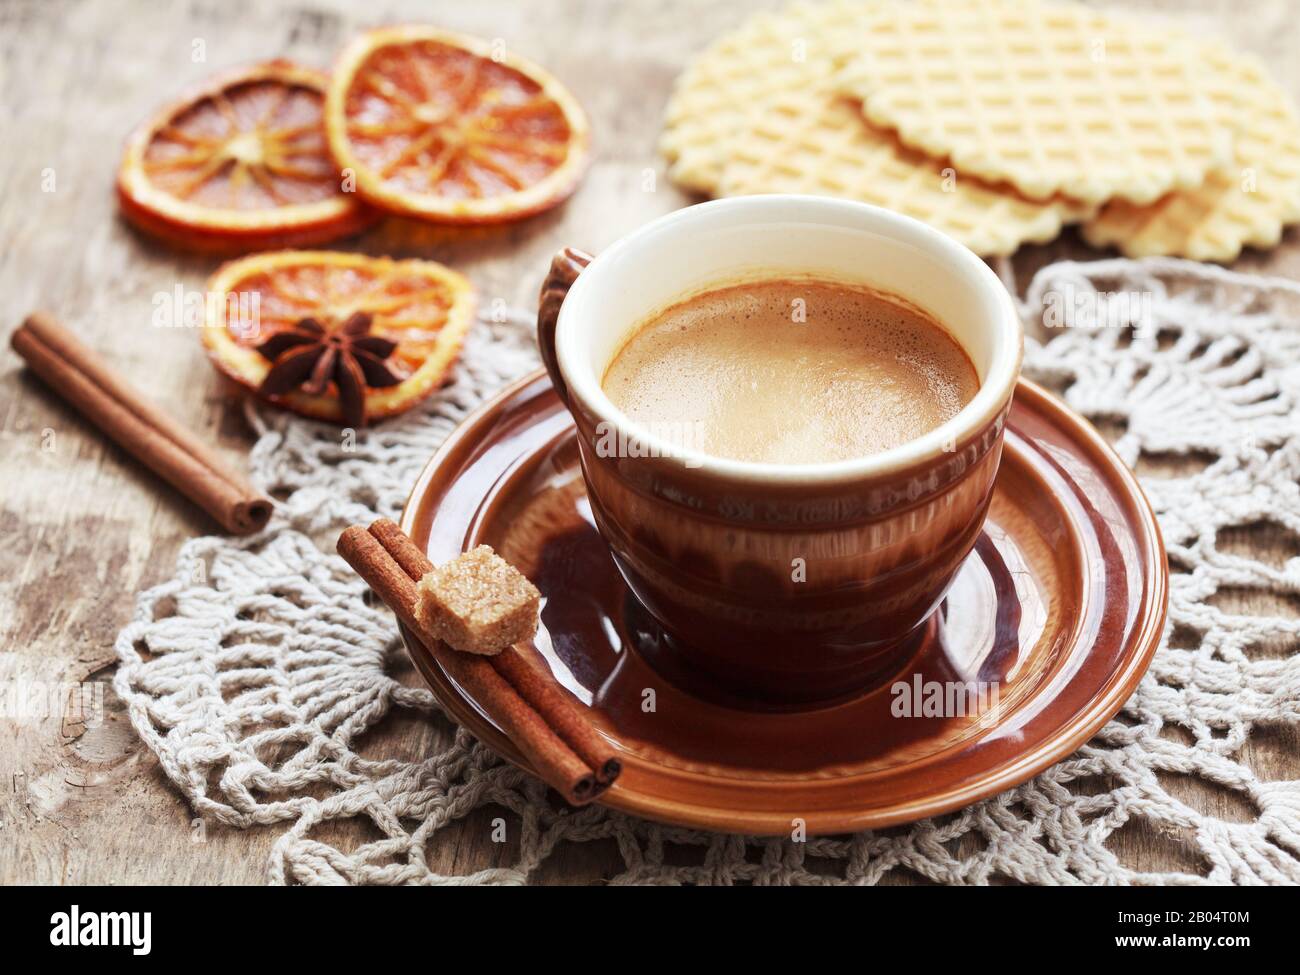 Une tasse de café, dentelle doily, orange confite, gaufres et bâtons de cannelle sur table en bois, style rustique. Mise au point sélective sur le café et les tons Banque D'Images